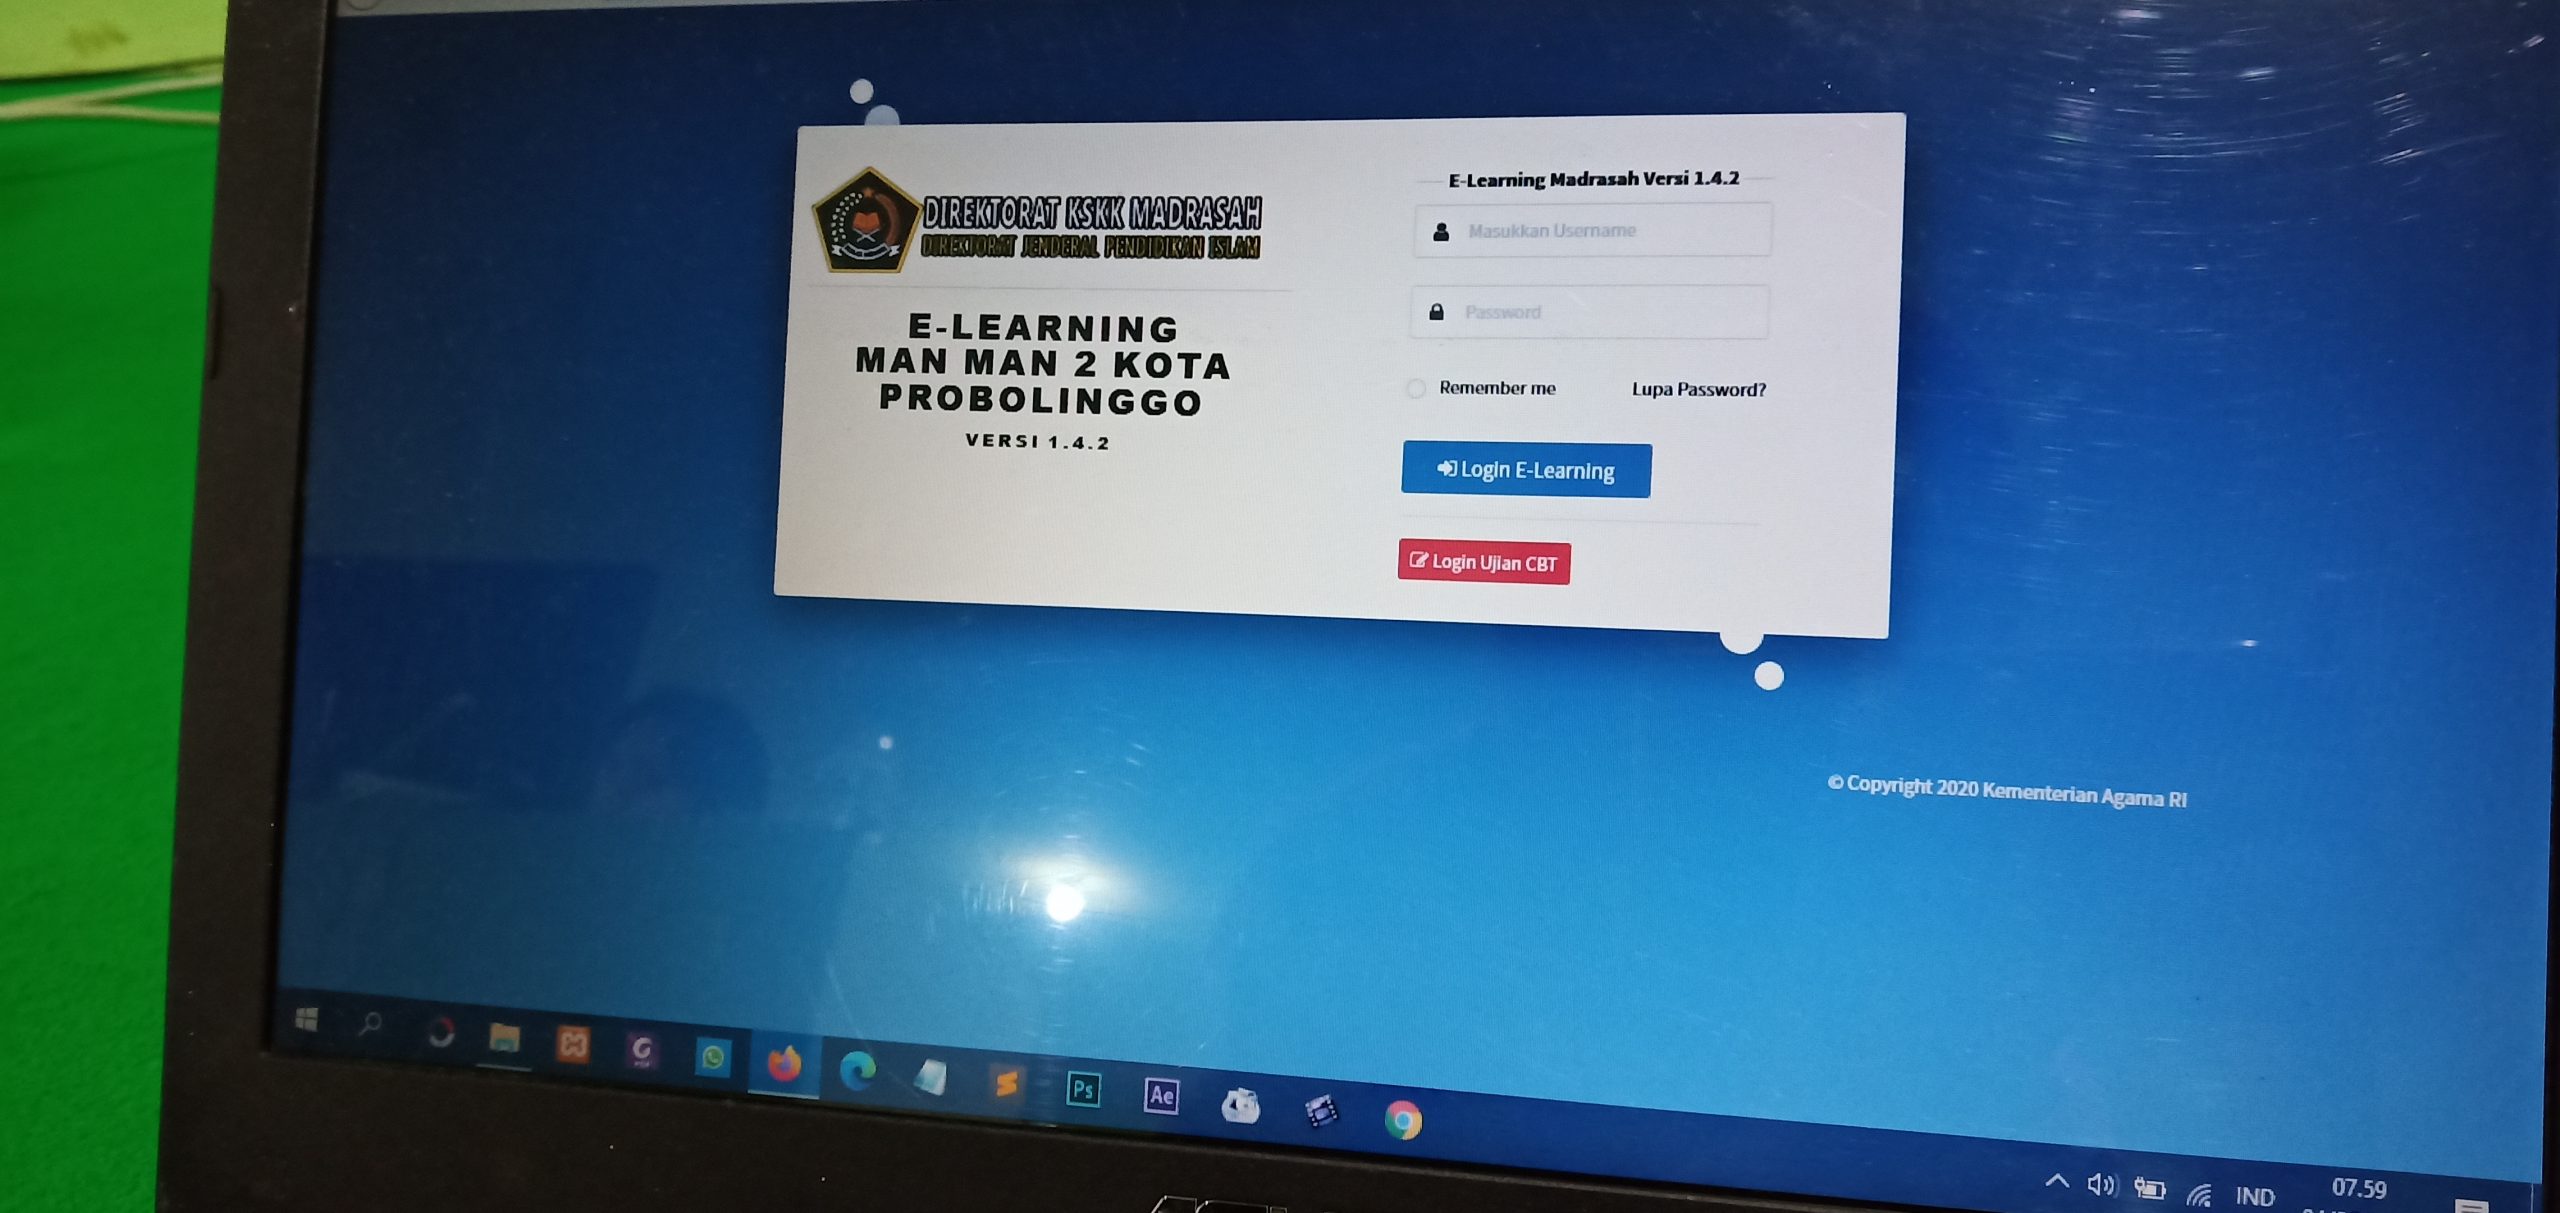 E-Learning MAN 2 Kota Probolinggro